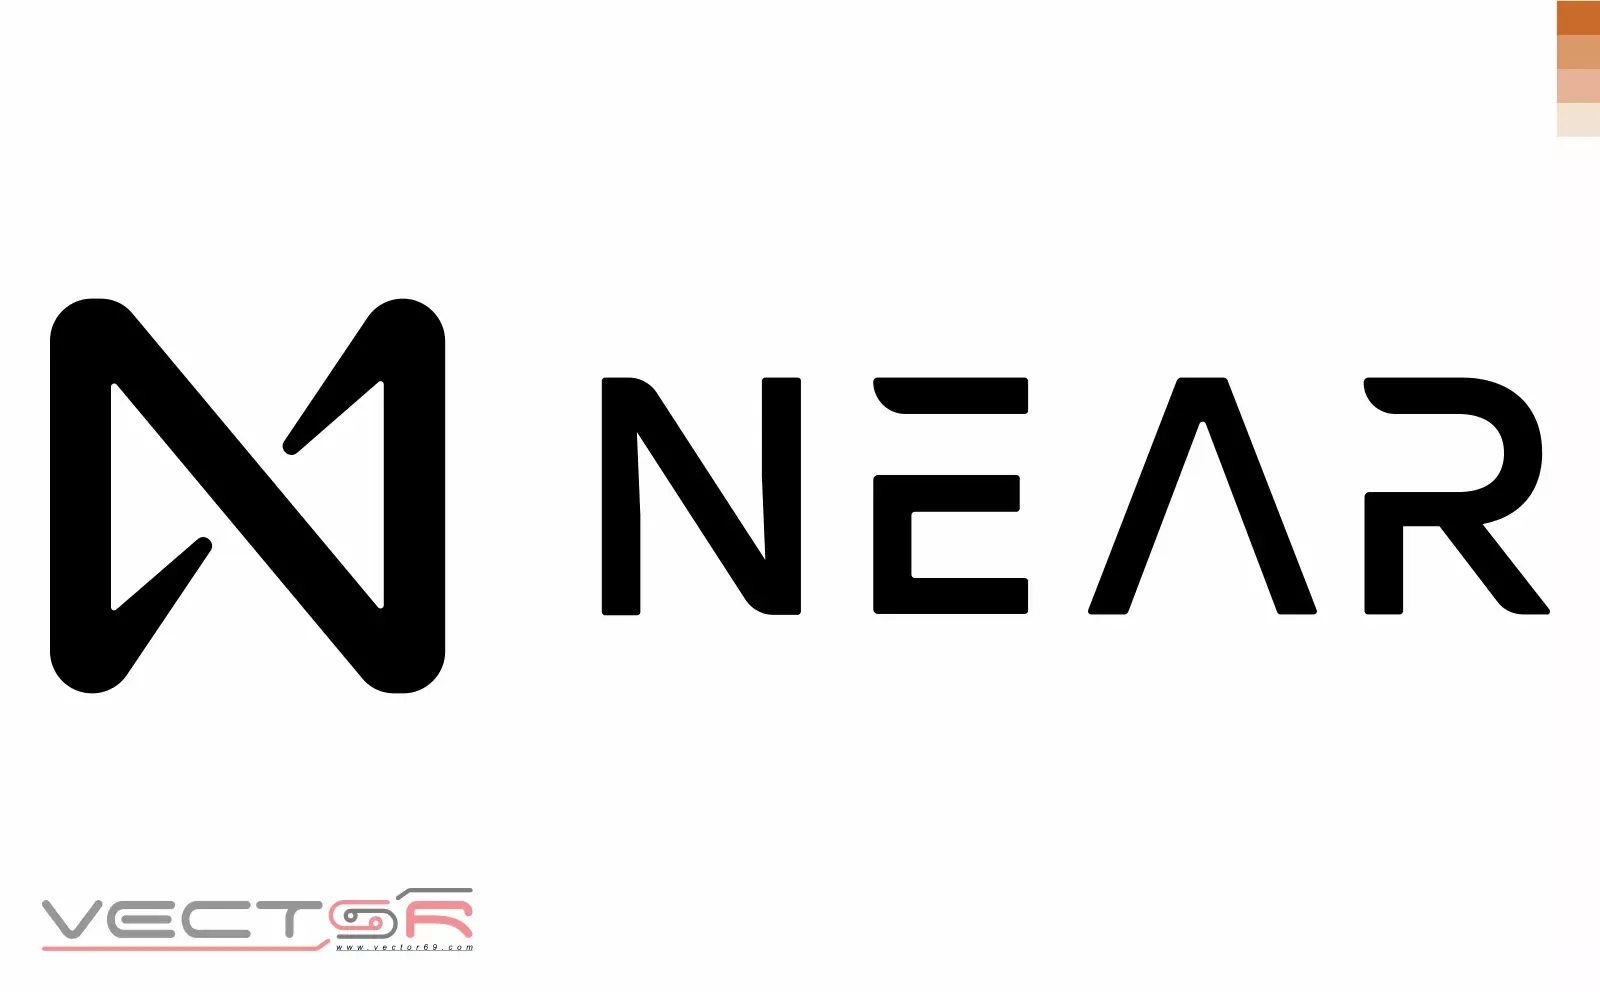 NEAR Protocol Logo - Download Vector File AI (Adobe Illustrator)